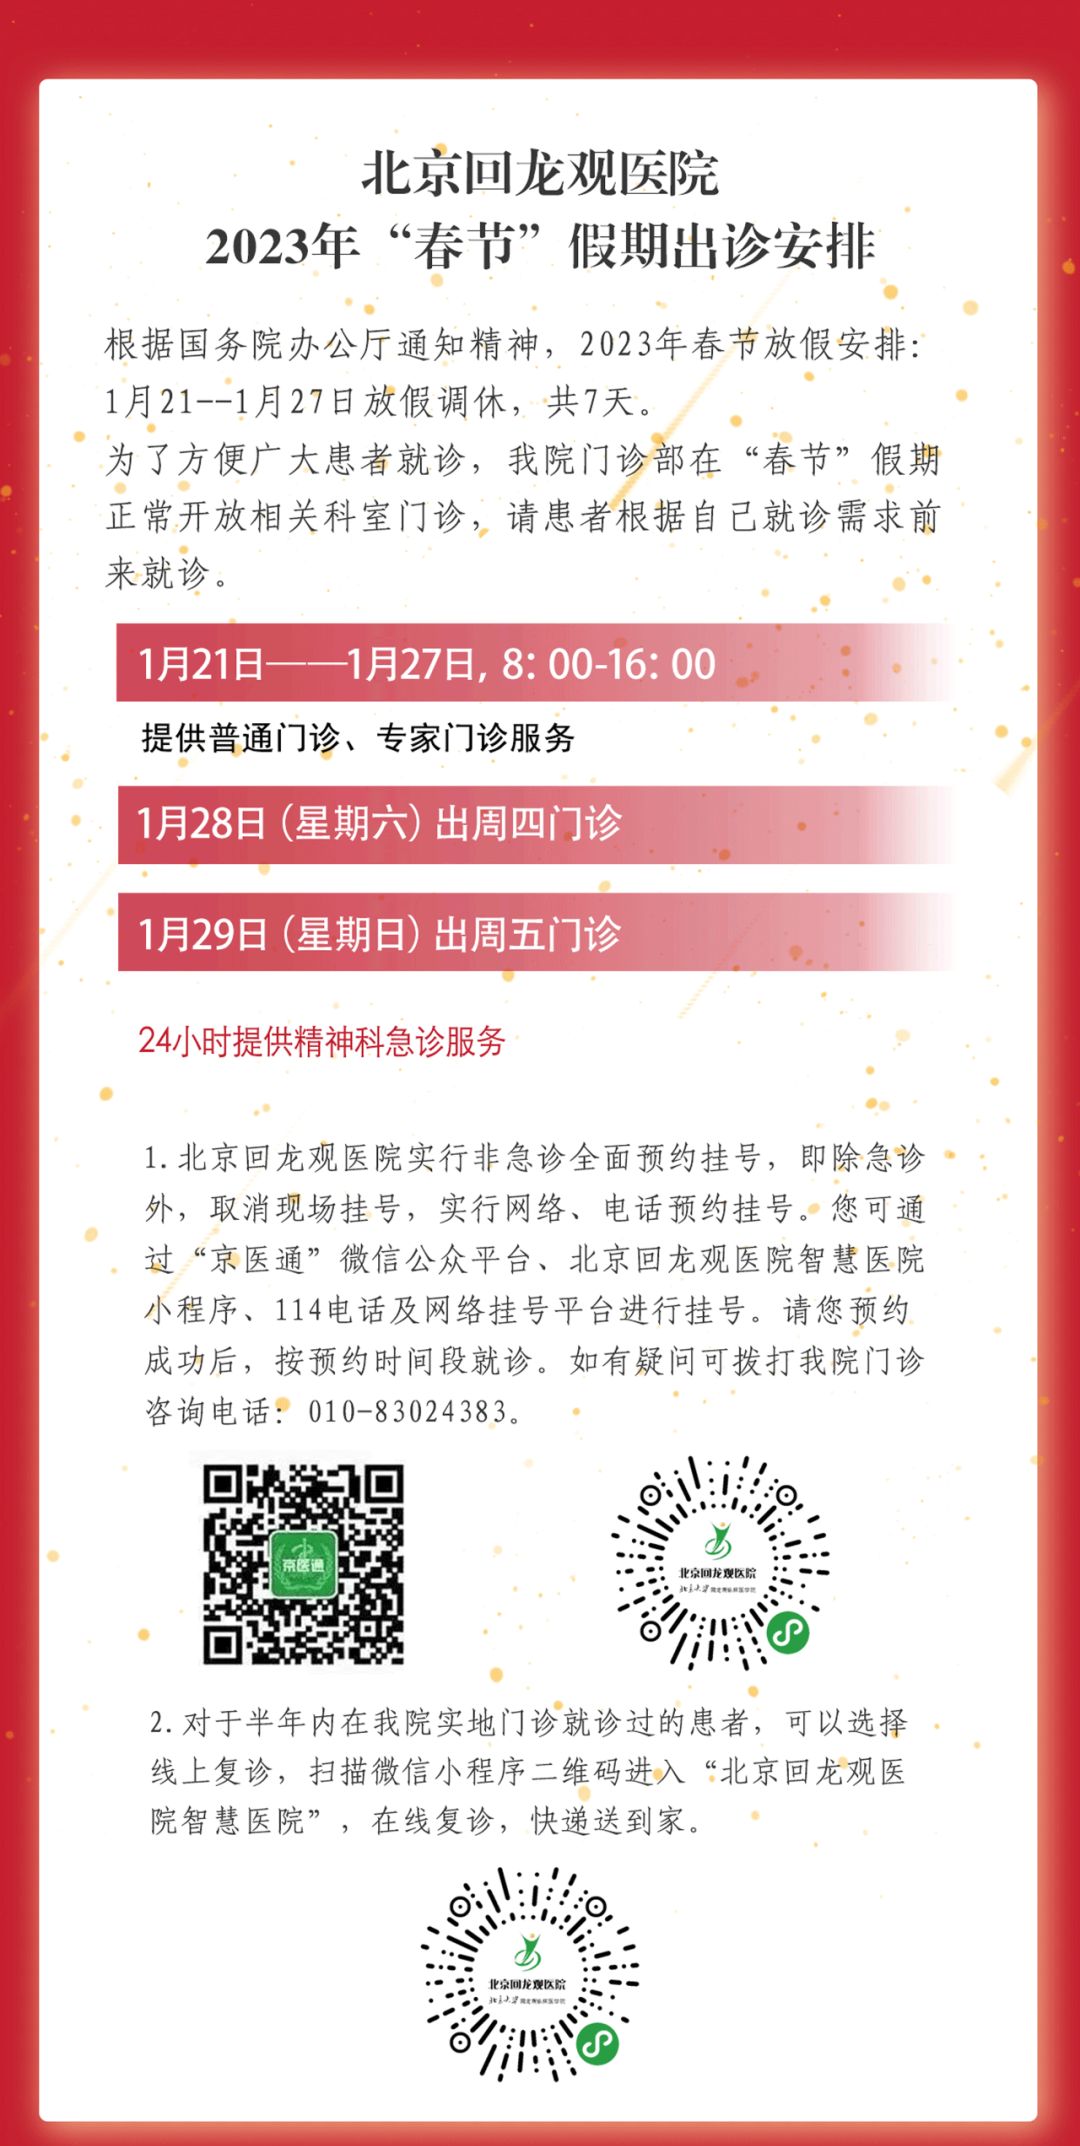 北京回龍觀醫院2023年“春節”假期出診安排